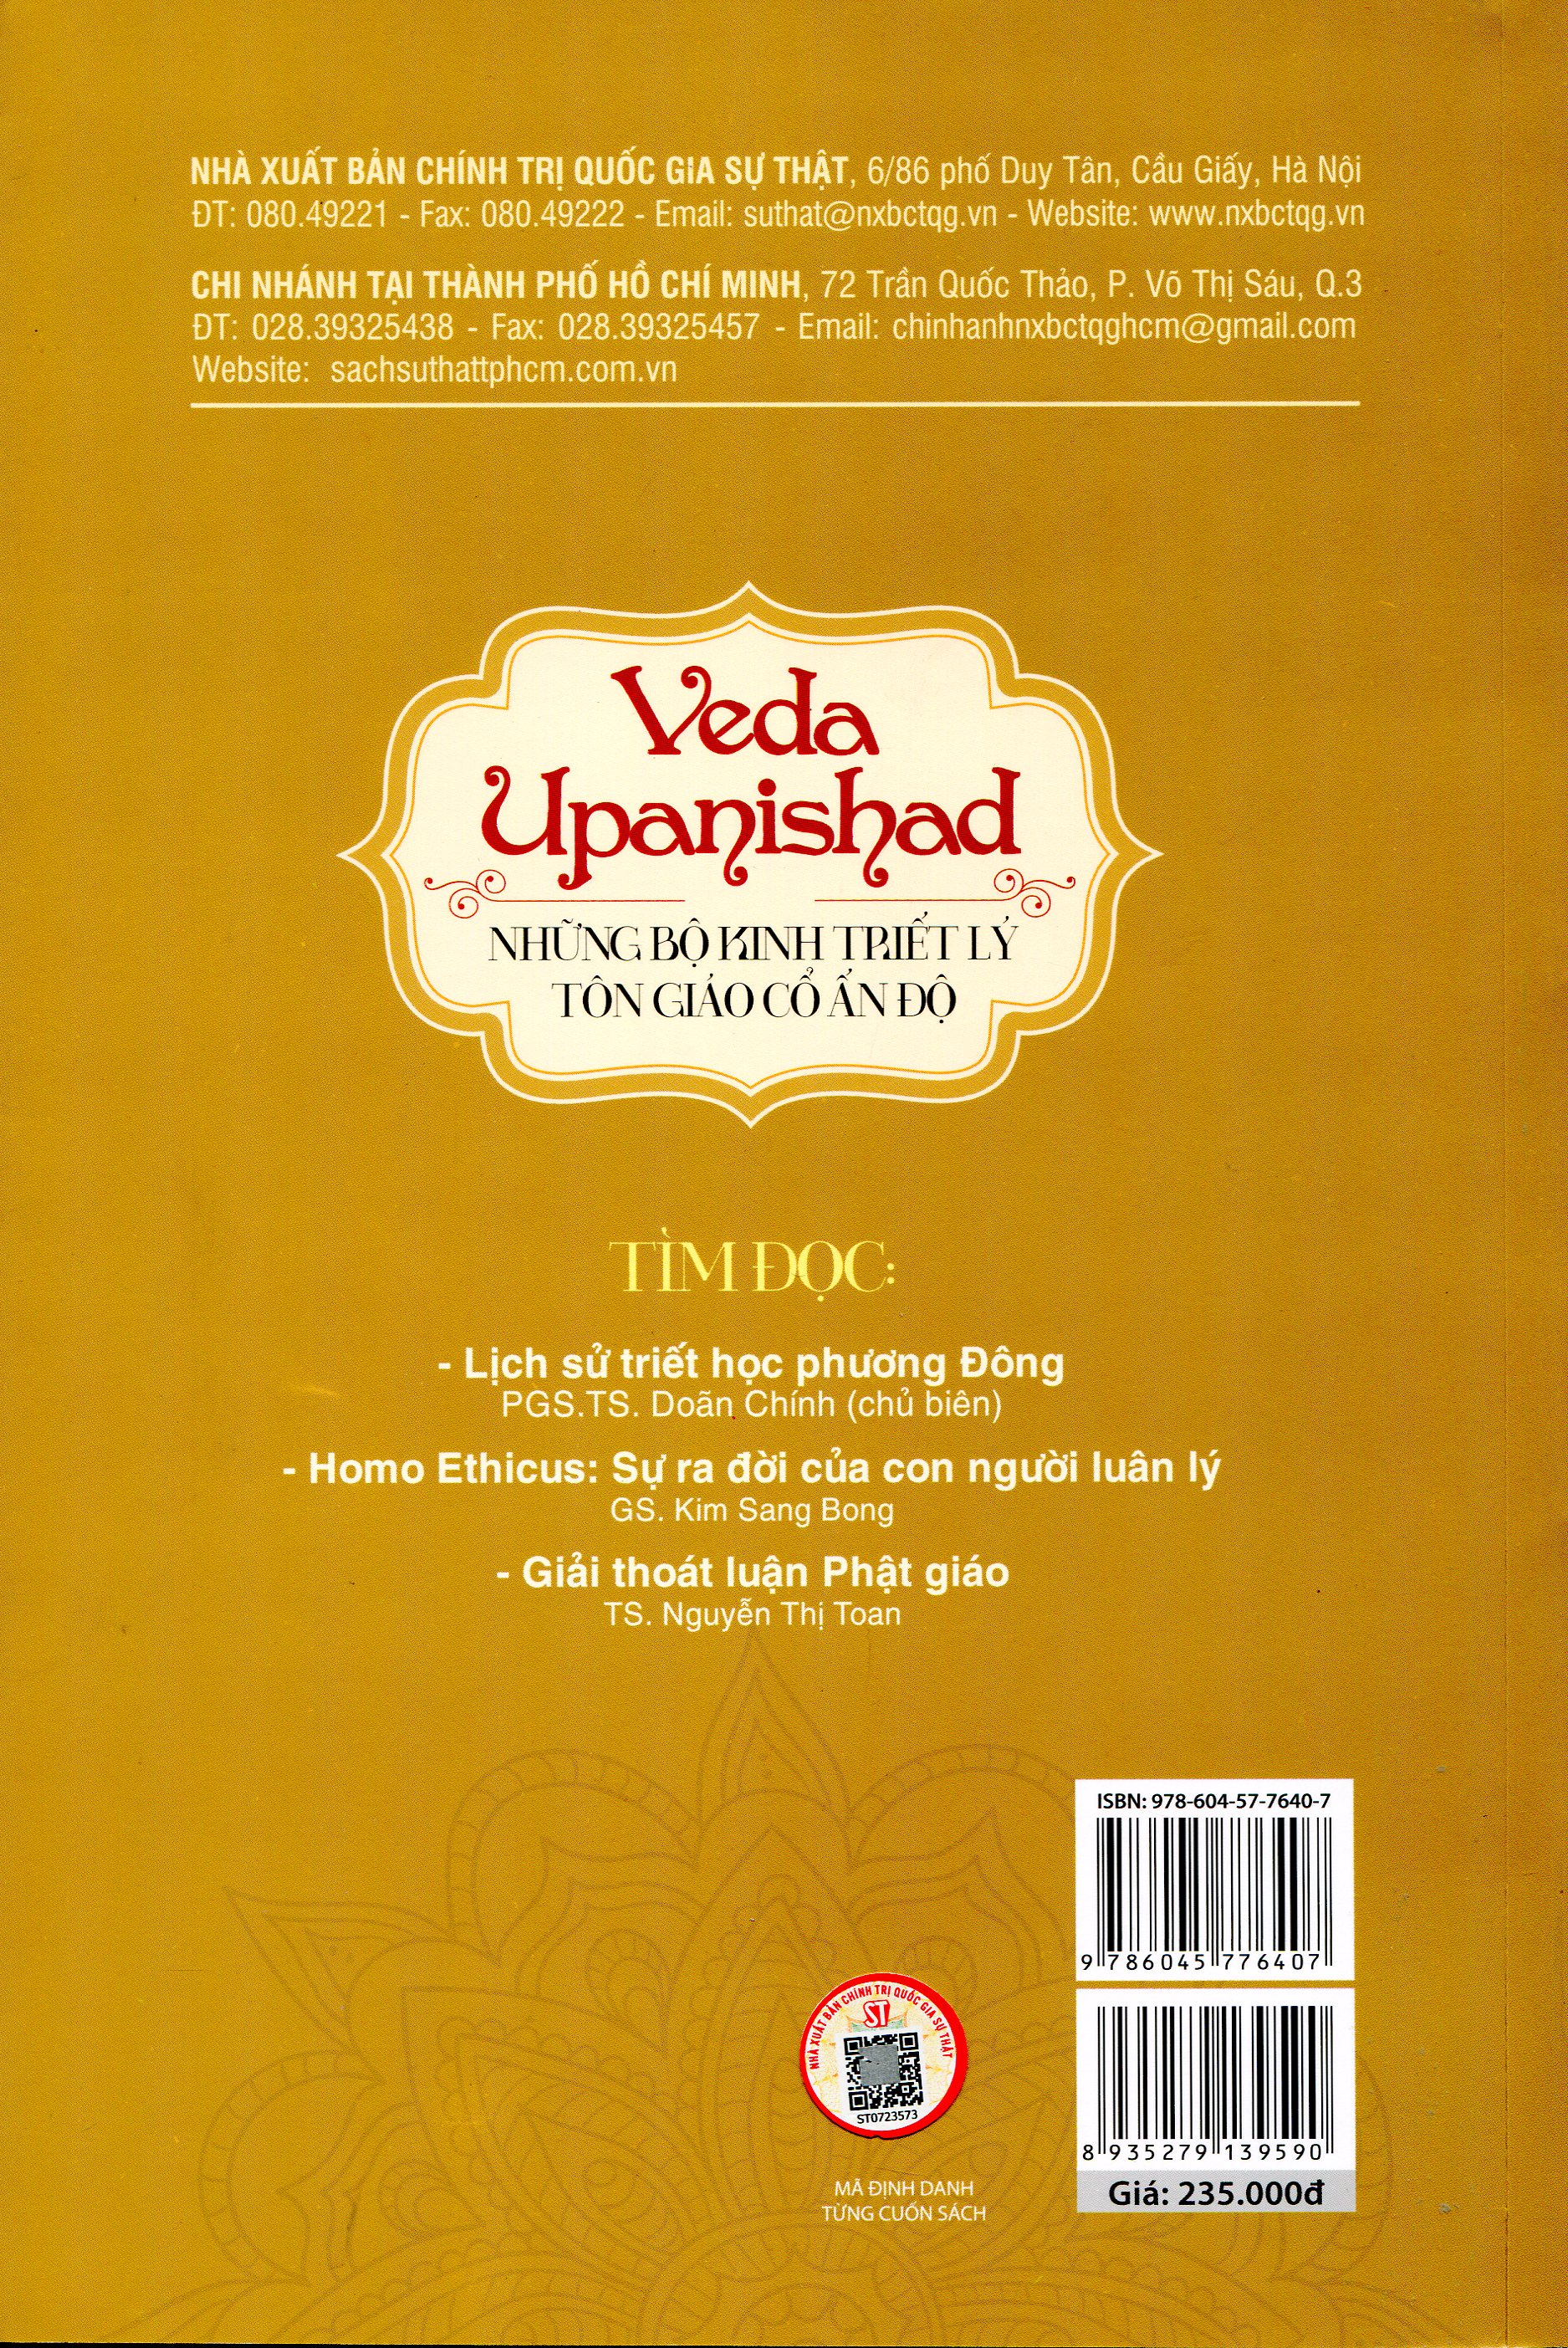 Veda Upanishad - Những Bộ Kinh Triết Lý Tôn Giáo Cổ Ấn Độ